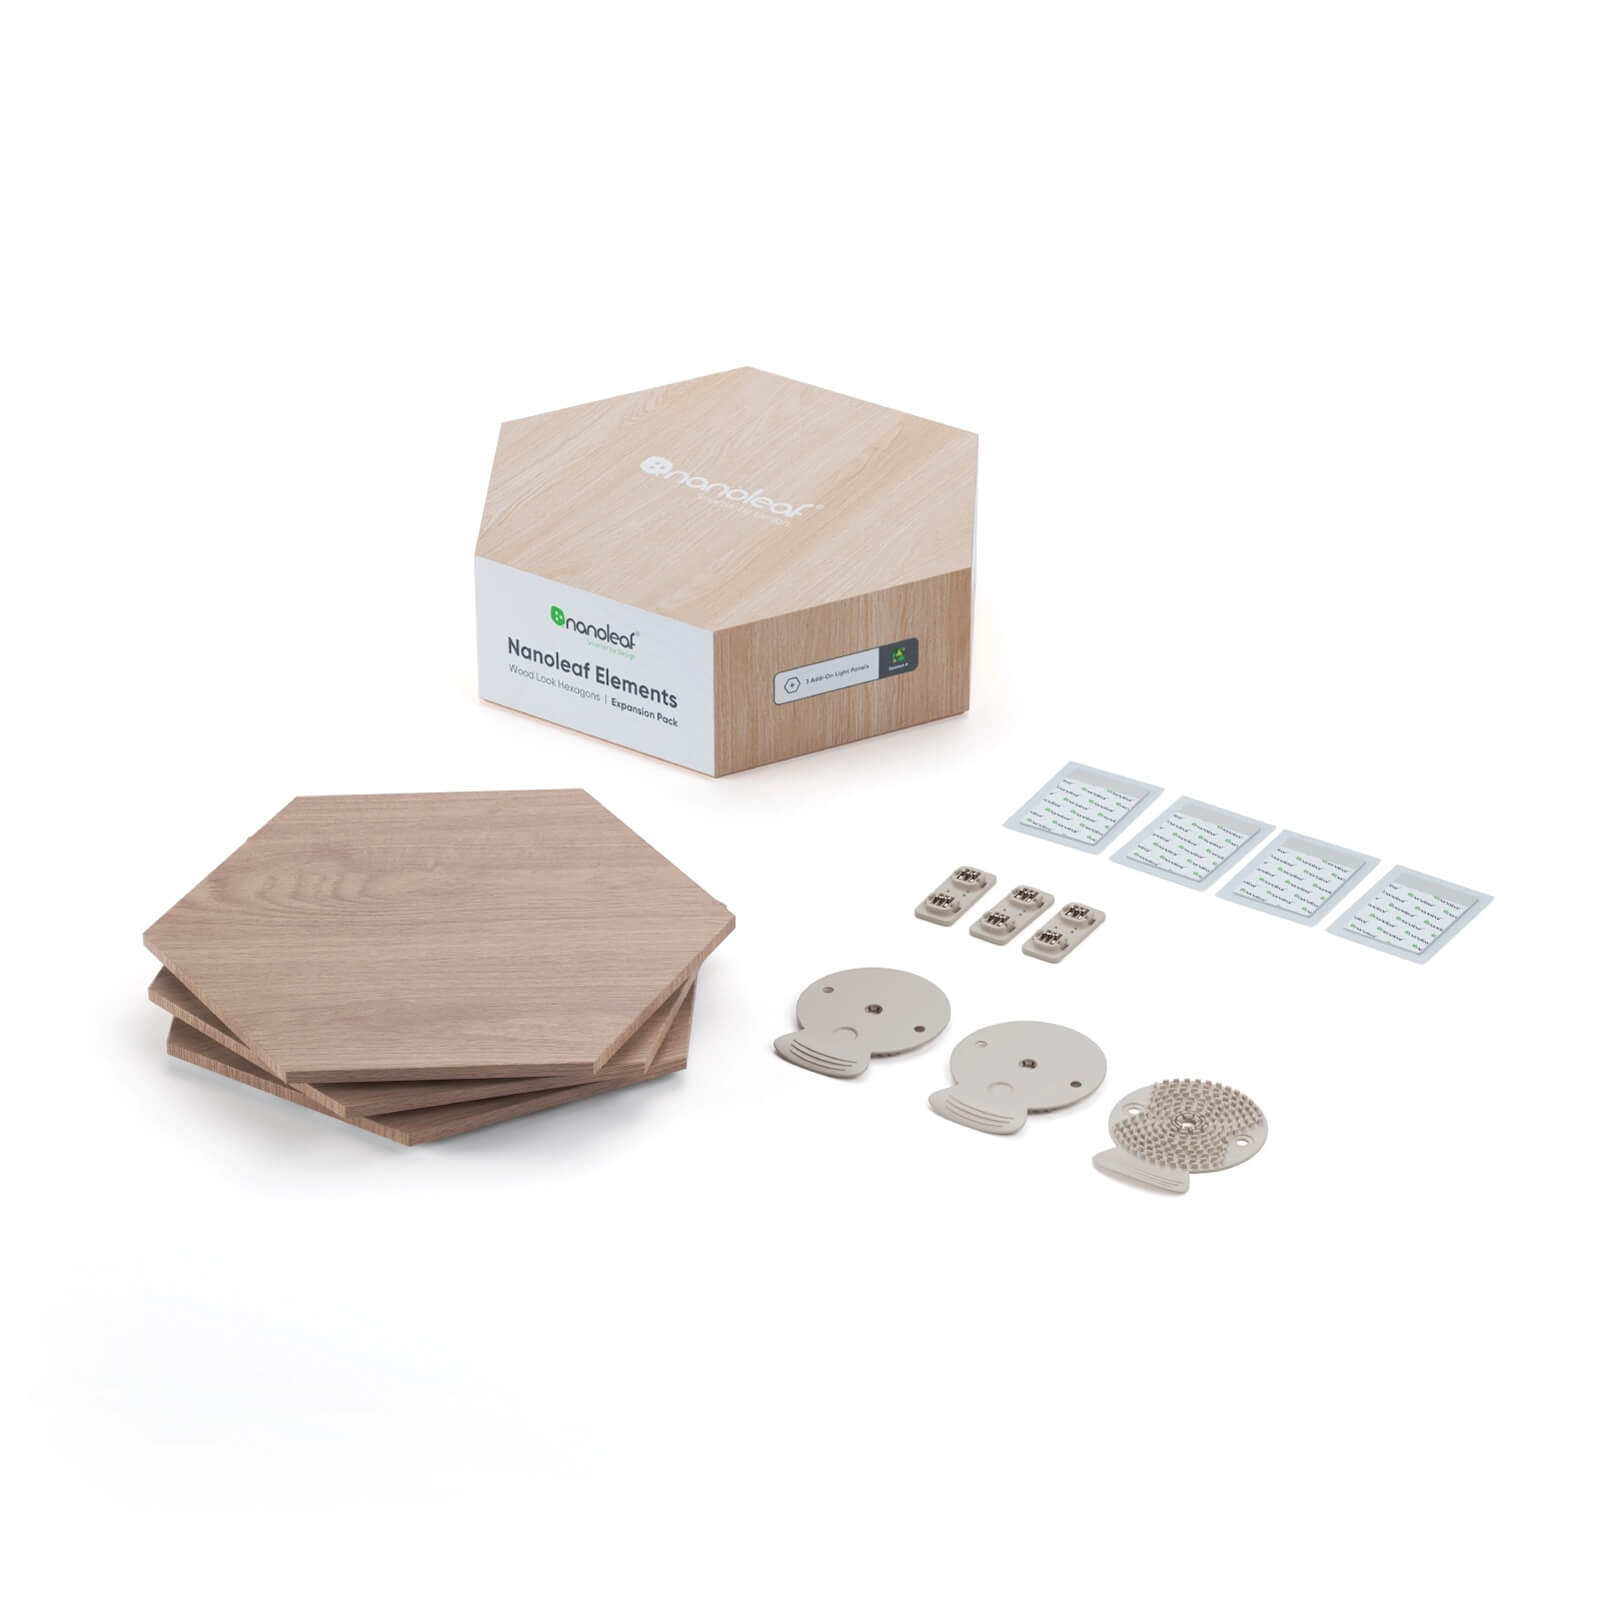 Nanoleaf Elements - Hexagon Starter Kit